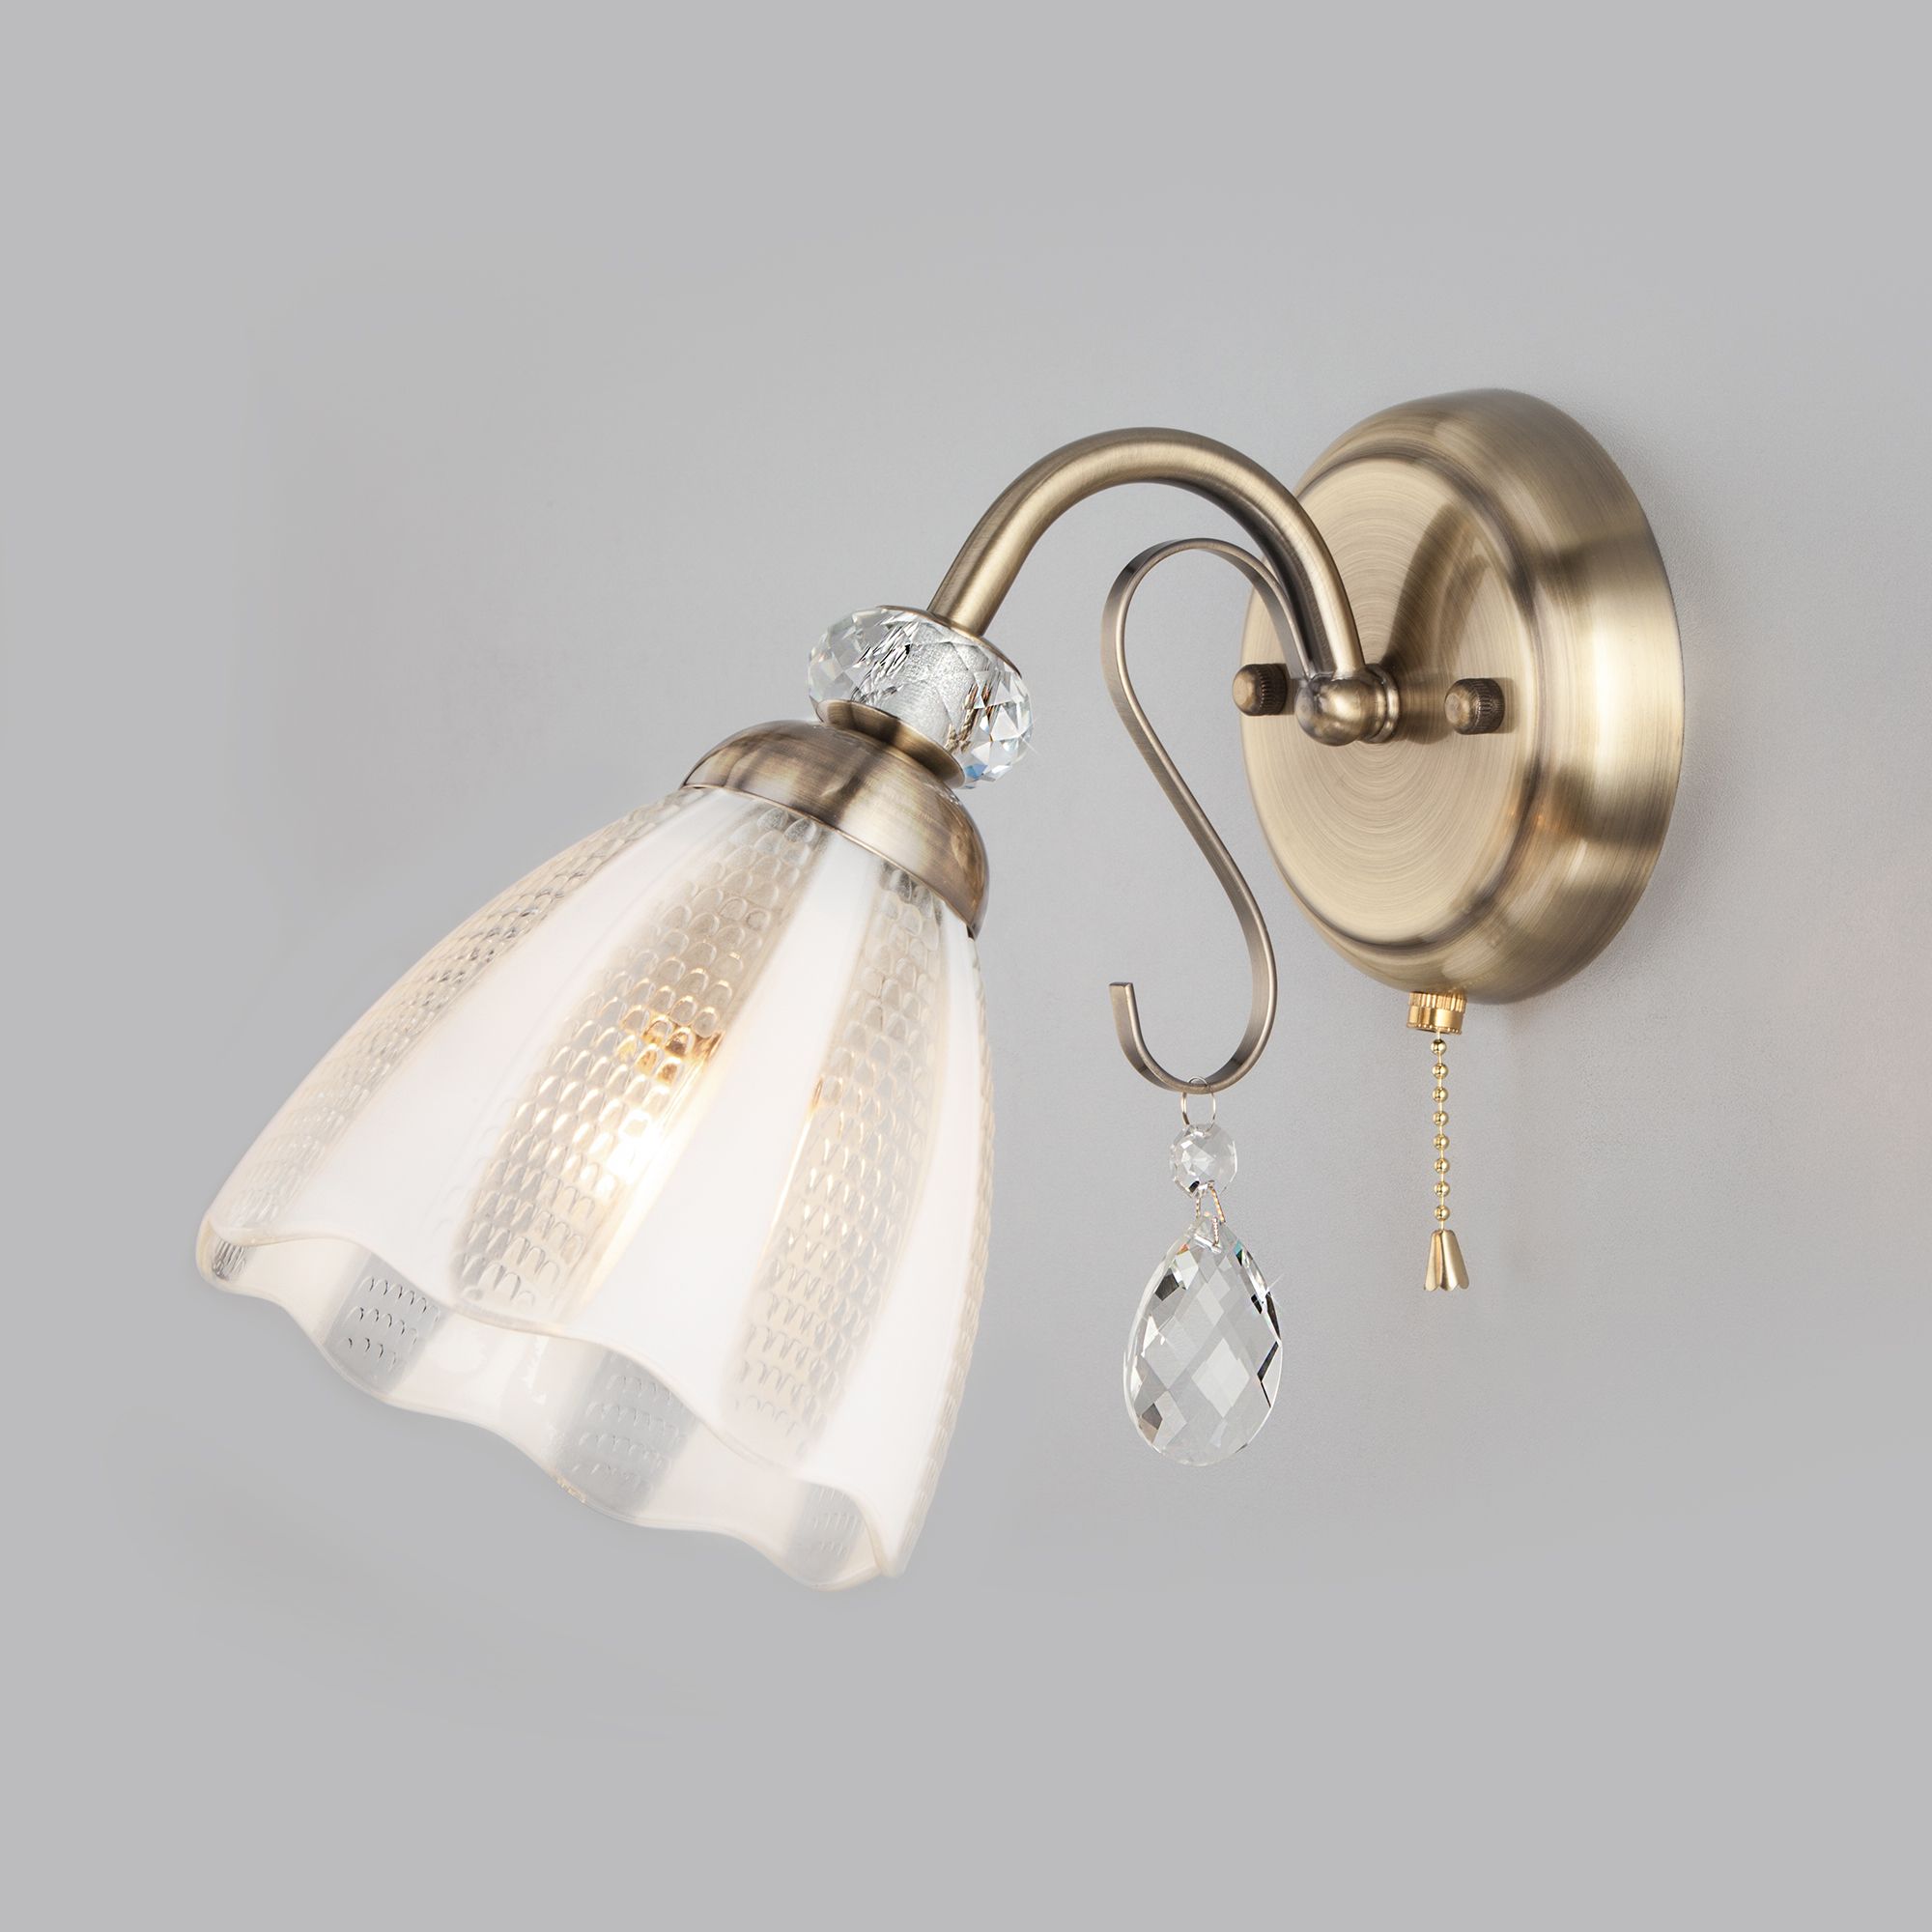 Настенный светильник со стеклянным плафоном Eurosvet Floranse 30155/1 античная бронза. Фото 1